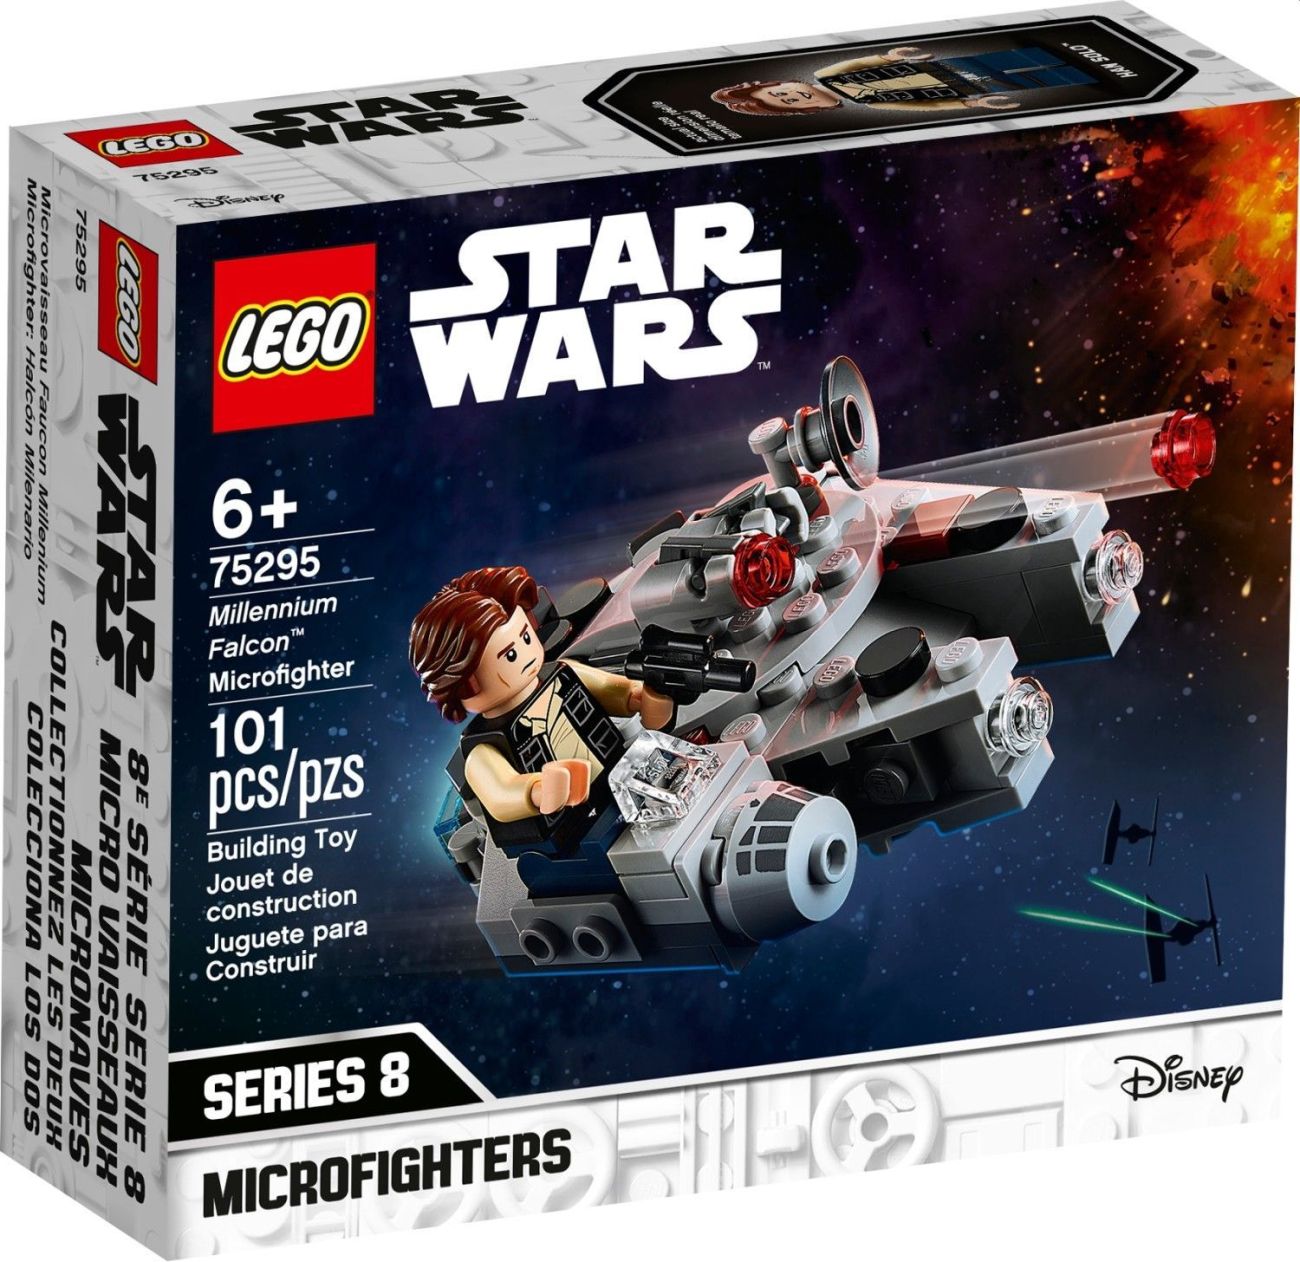 LEGO Star Wars 2021 Sommer Sets: Erste Bilder